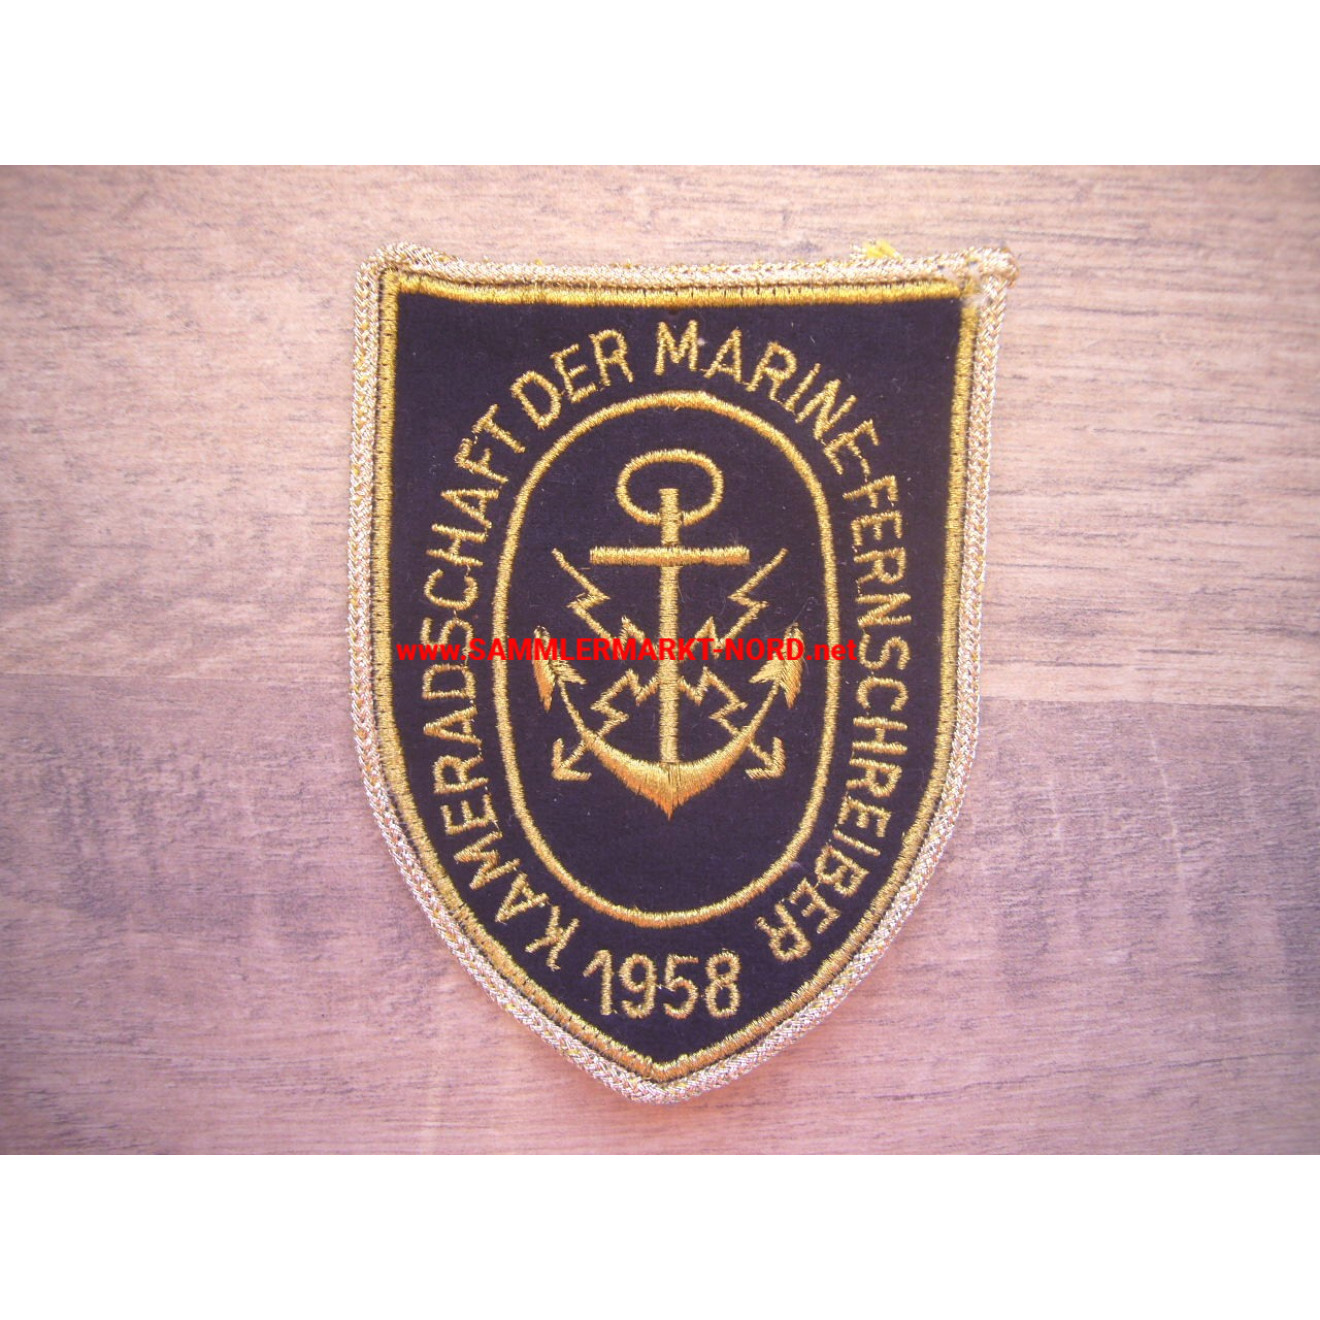 Kameradschaft der Marinefernschreiber 1958 - Uniformabzeichen